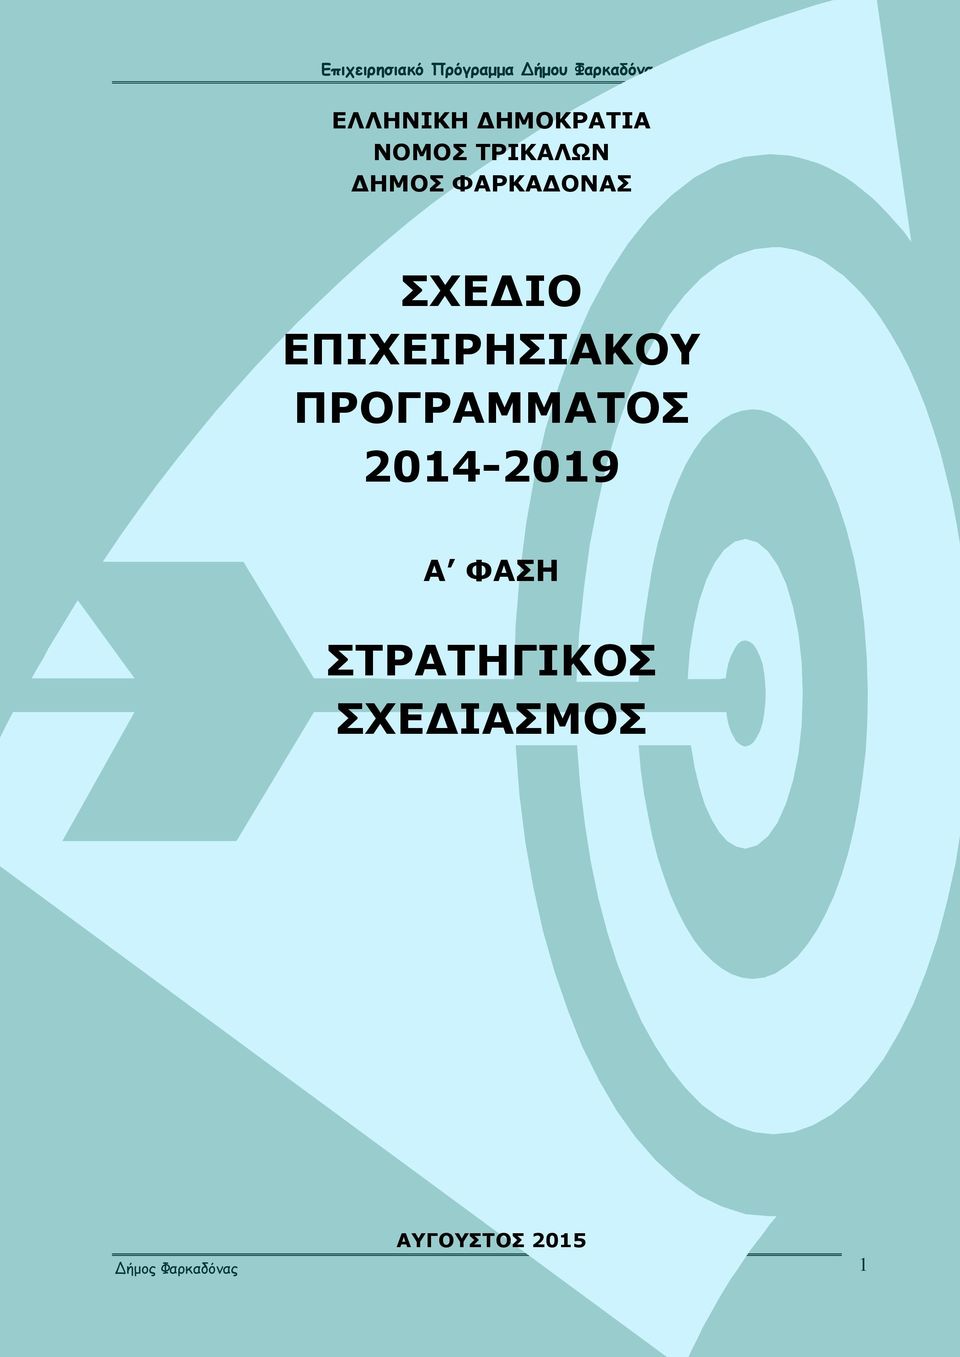 ΠΡΟΓΡΑΜΜΑΤΟΣ 2014-2019 Α ΦΑΣΗ